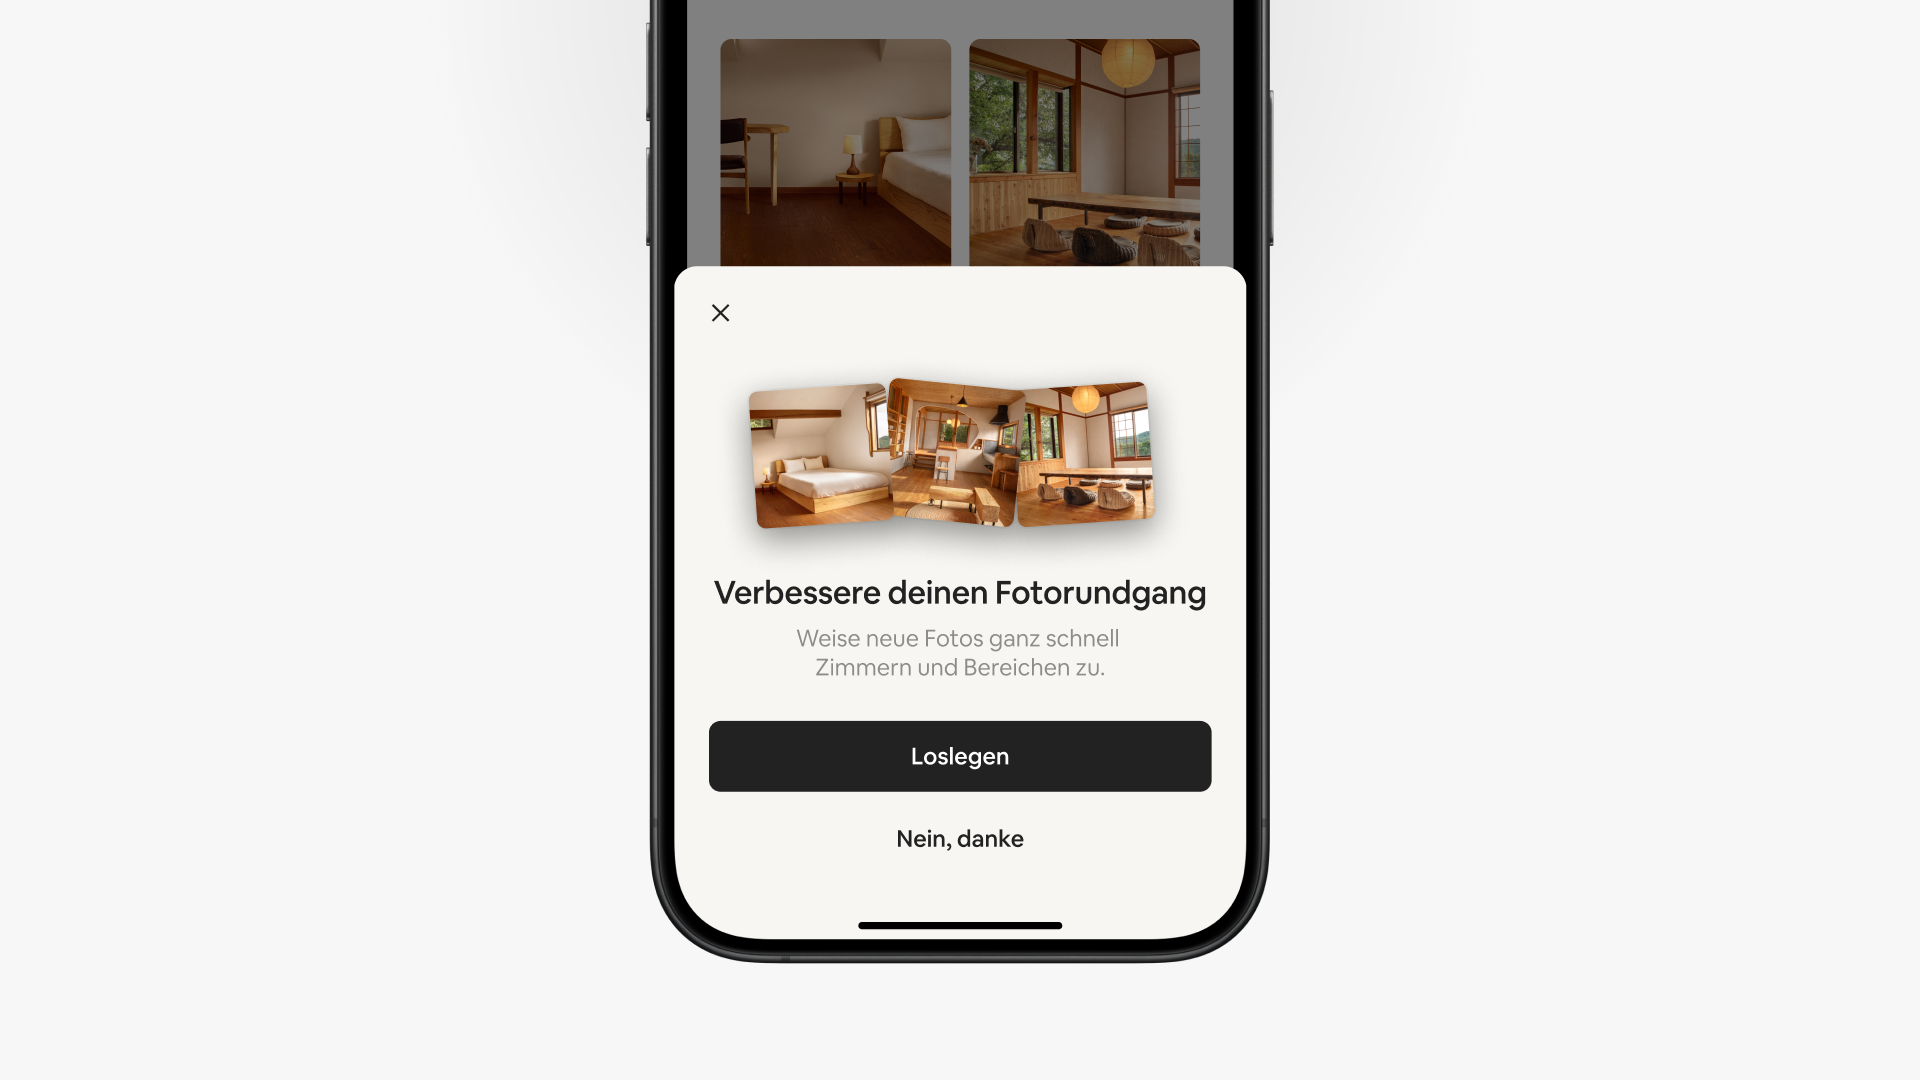 Ein Pop-up-Bildschirm in der Airbnb-App zeigt „Verbessere deinen Fotorundgang“ über zwei Buttons mit den Optionen „Loslegen“ und „Nein, danke“ an.